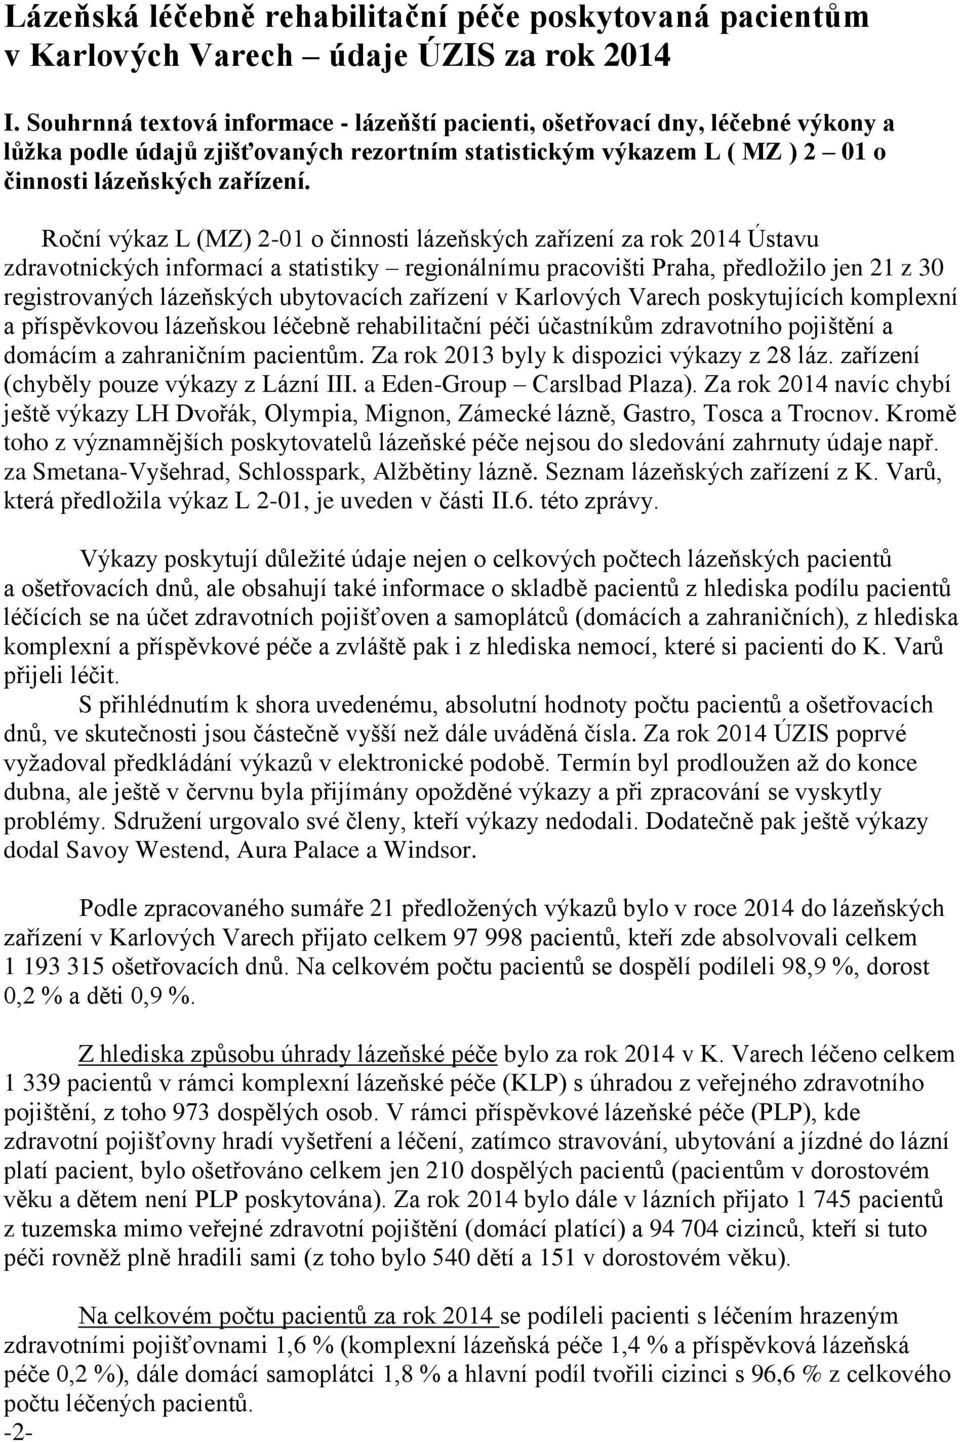 Roční výkaz L (MZ) 2-01 o činnosti lázeňských zařízení za rok 2014 Ústavu zdravotnických informací a statistiky regionálnímu pracovišti Praha, předložilo jen 21 z 30 registrovaných lázeňských